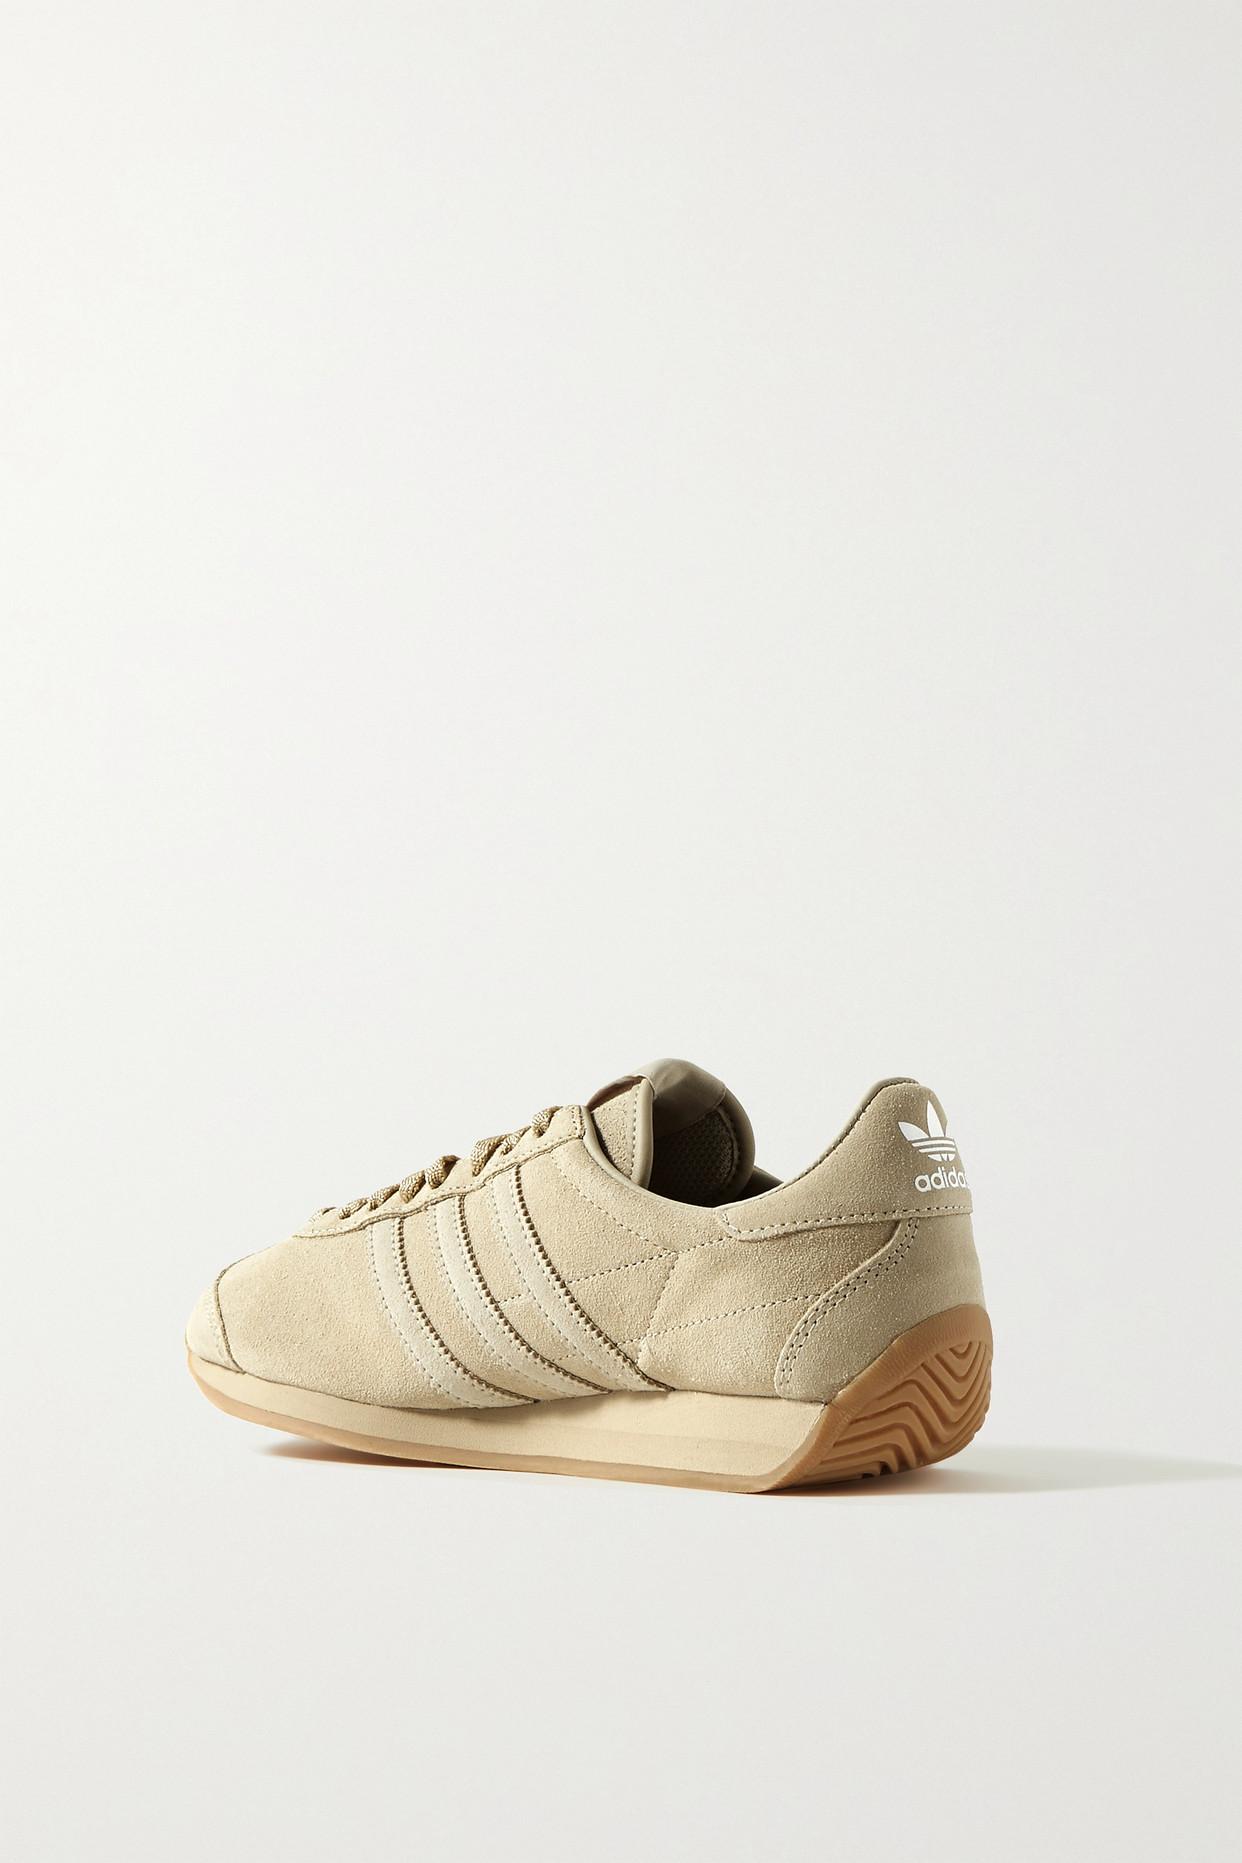 Khaite + Adidas Originals Suede Sneakers | Lyst